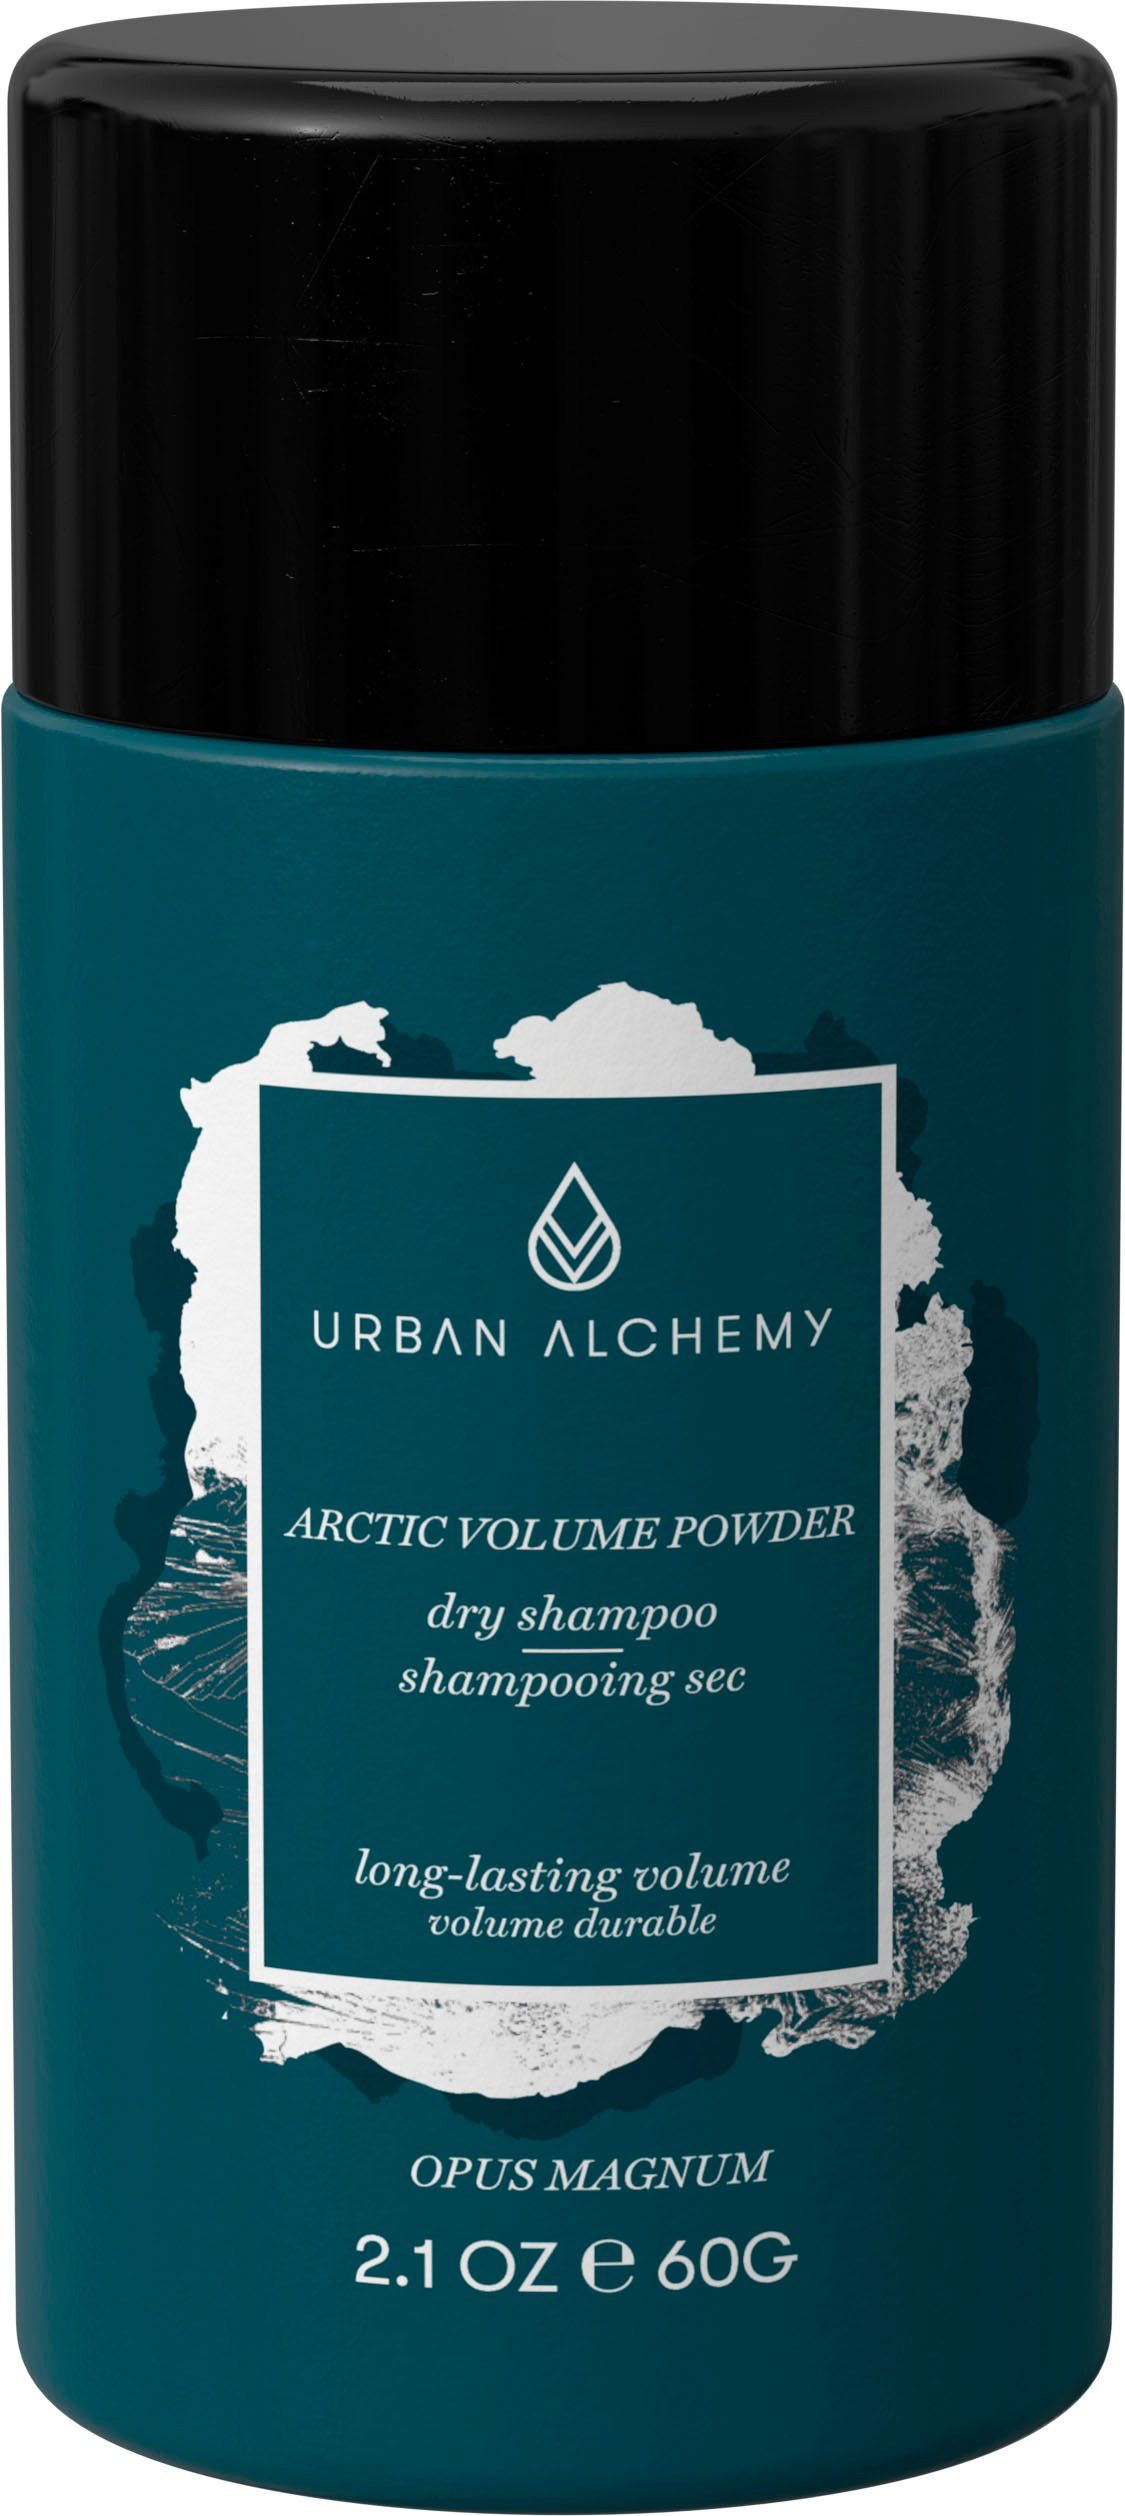 ALCHEMY URBAN Powder Arctic Volume Volumenpuder